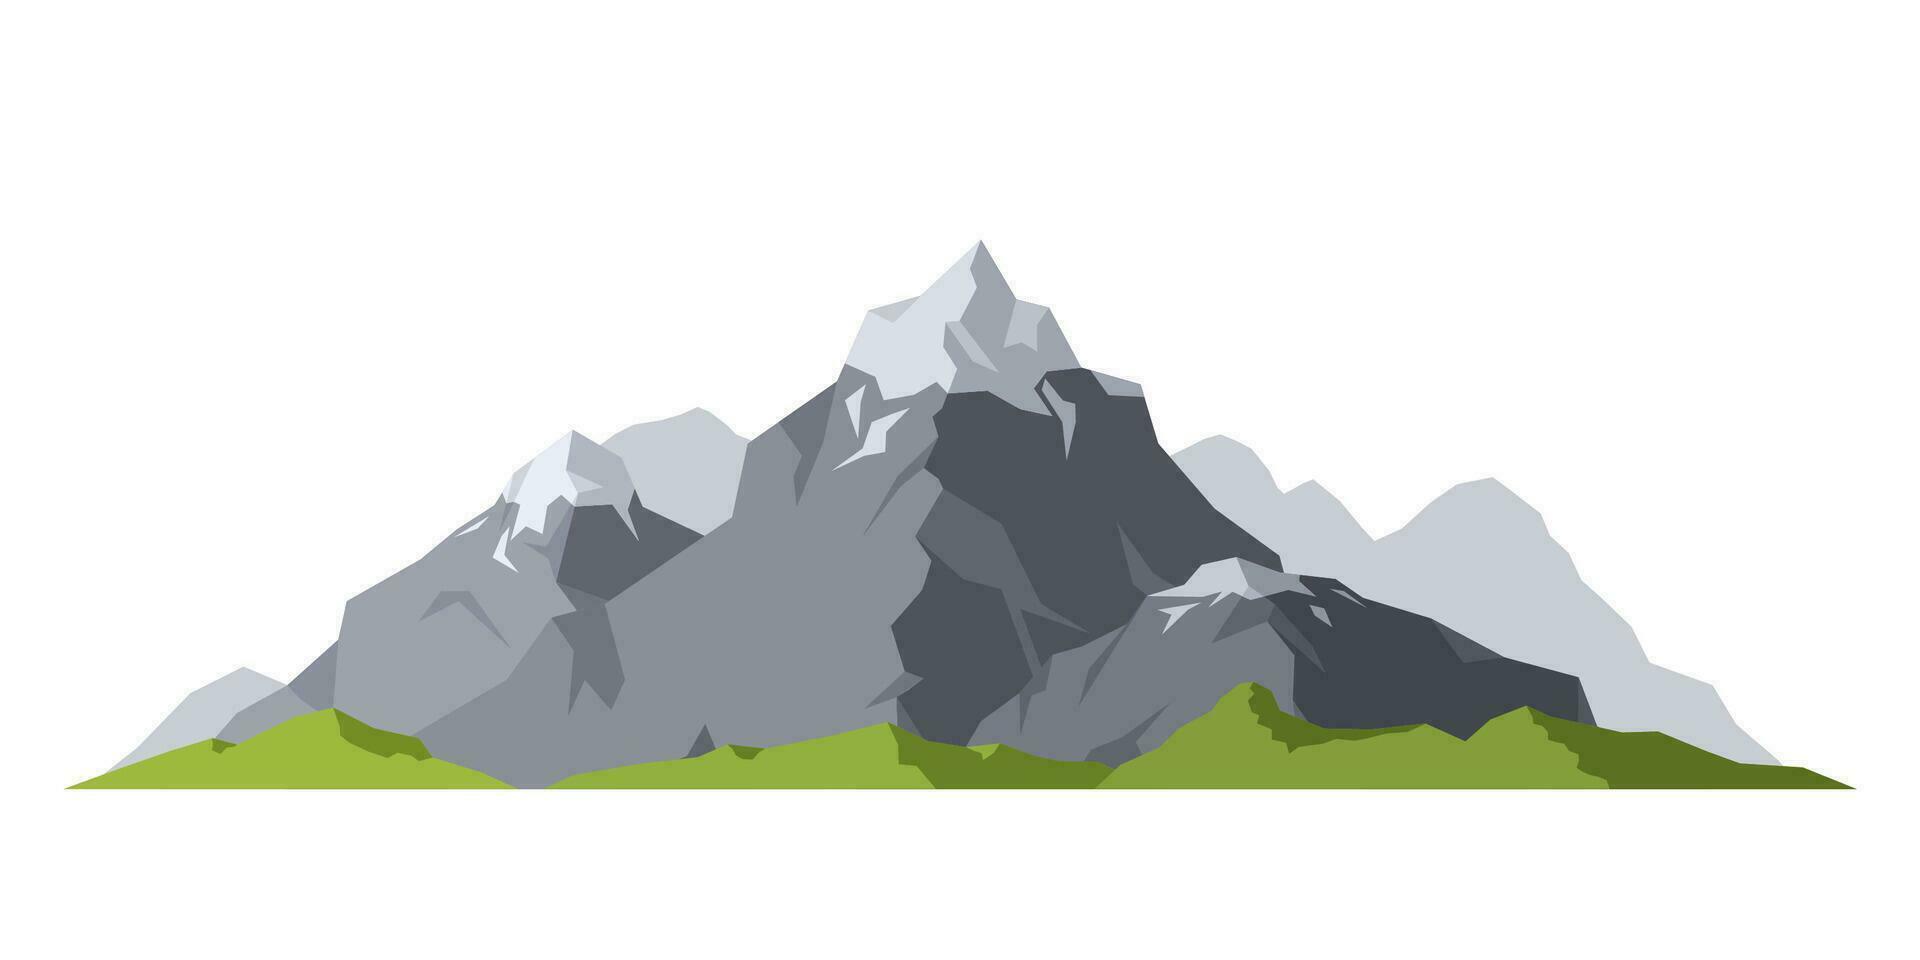 Berg reifen Silhouette Element draussen Schnee Eis Spitzen isoliert auf Weiß Hintergrund, Camping Landschaft Reise Klettern oder Wandern Geologie Berg. Vektor Illustration.